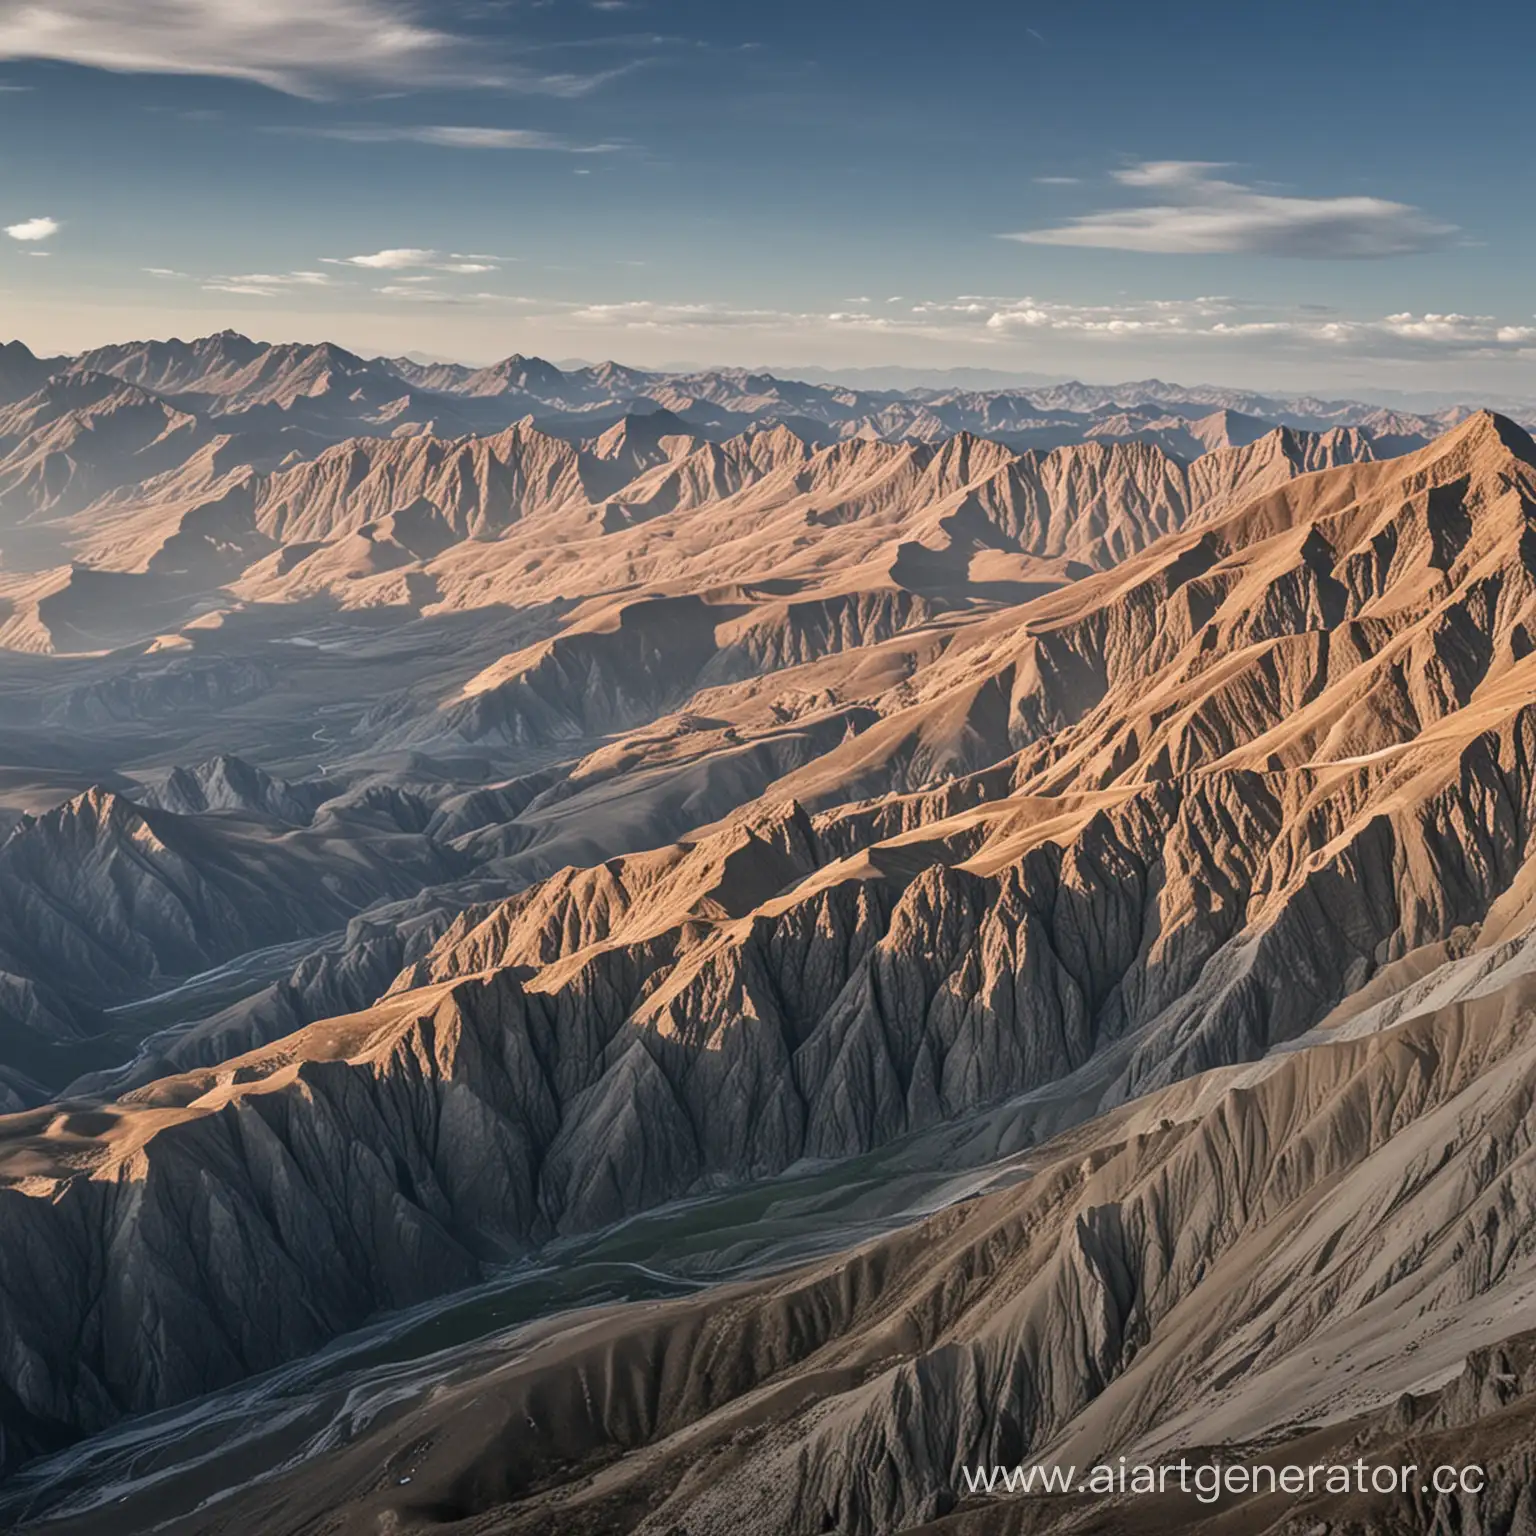 горы из 3 вершин и море видна другая планета дагестан
